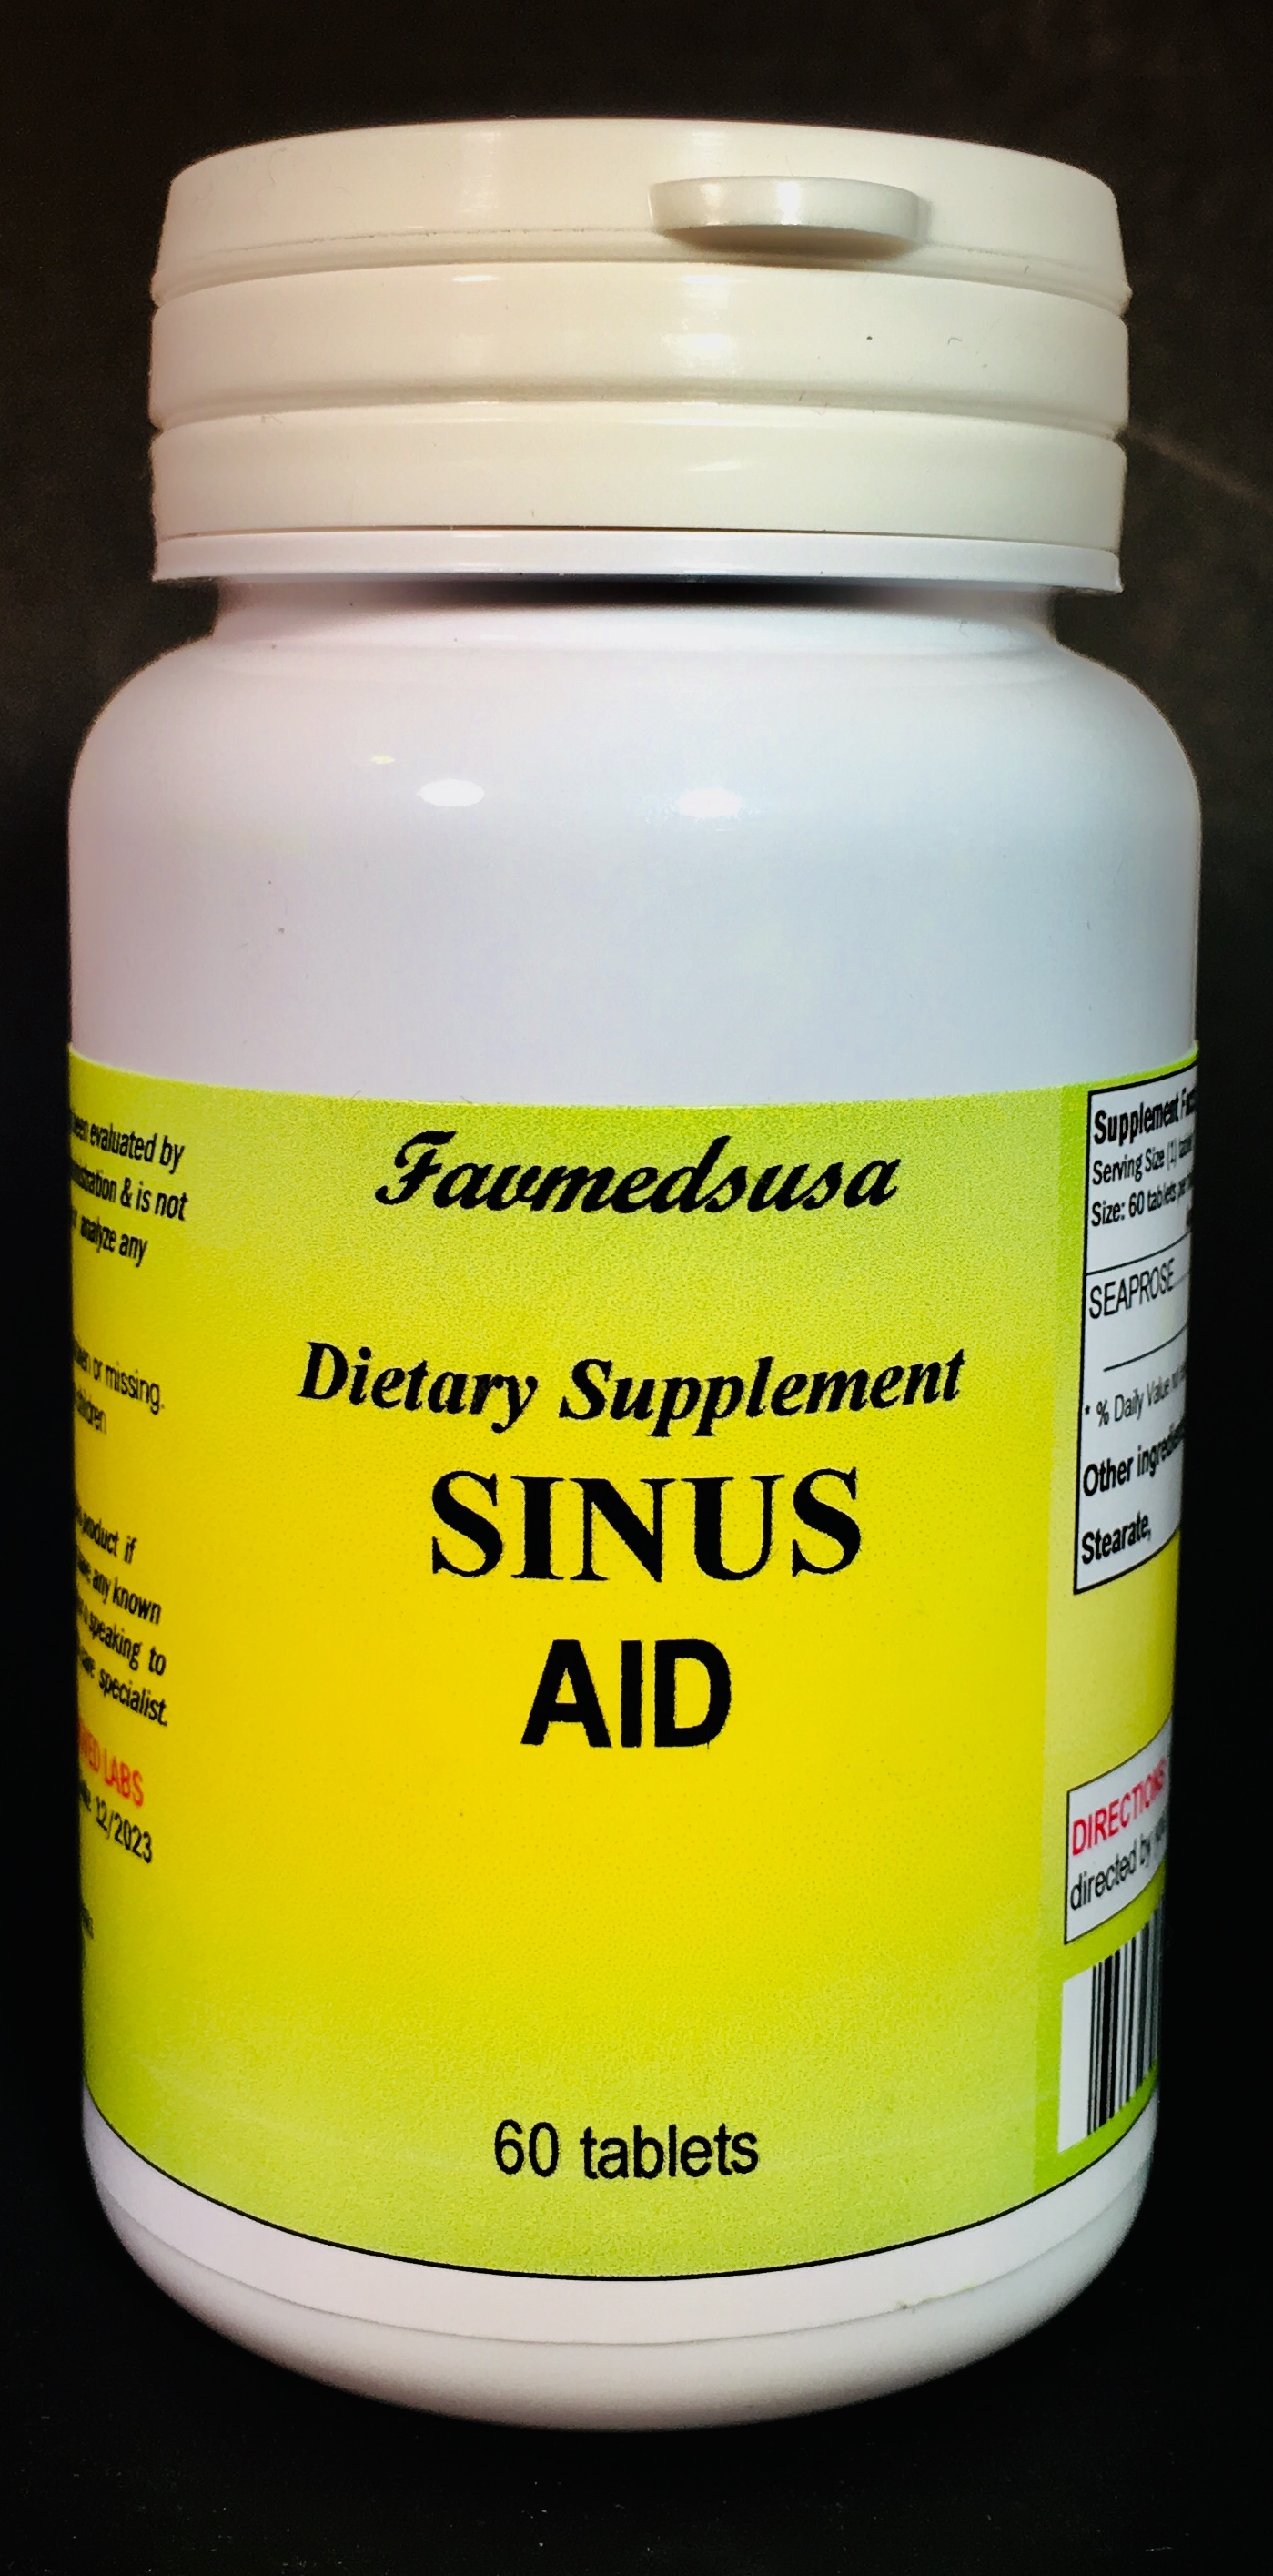 Sinus Aid (Seaprose) - 60 tablets